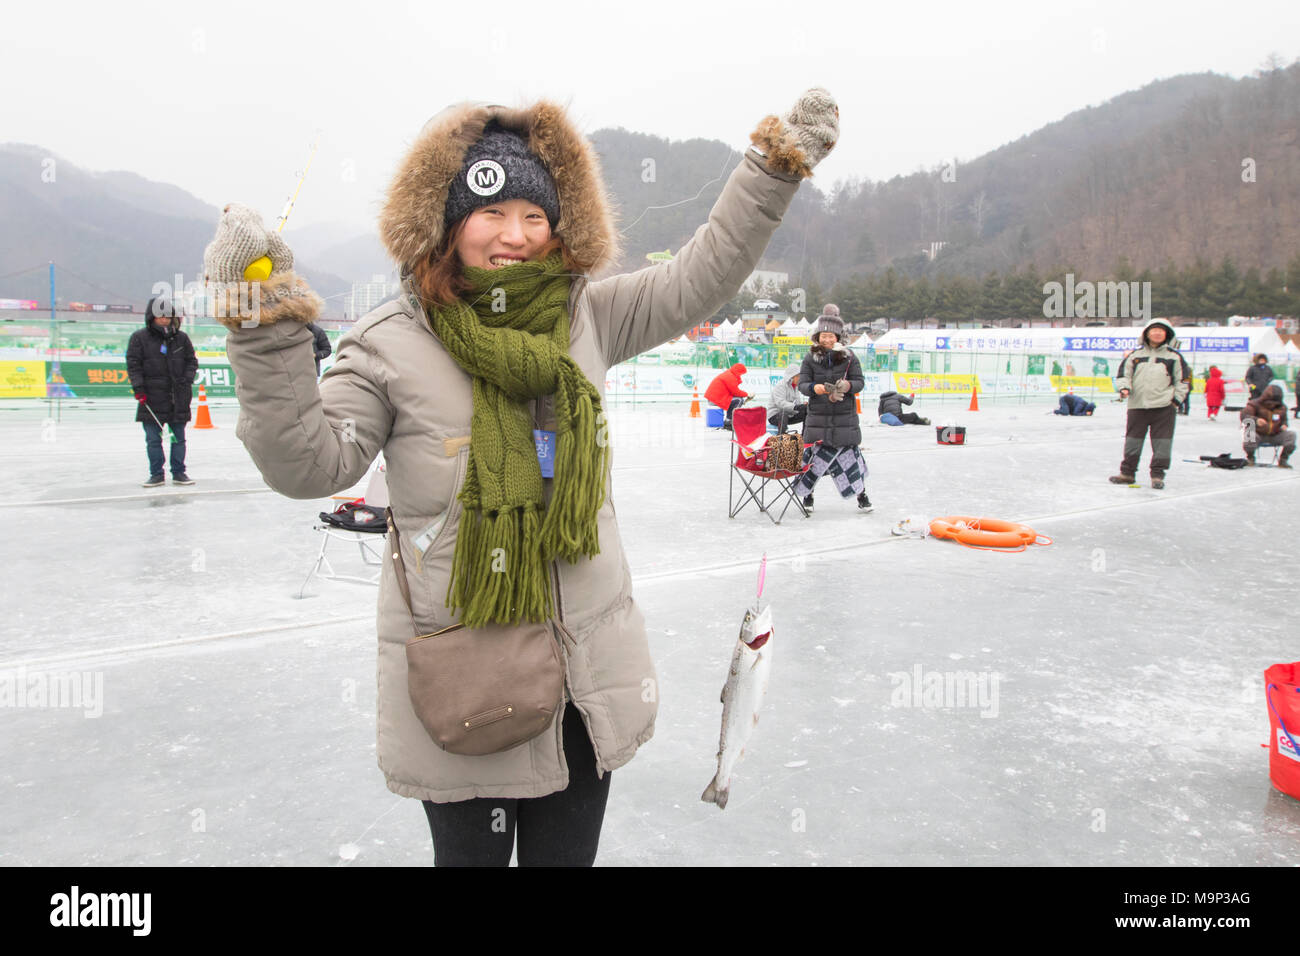 Eine Frau zeigt gerne einen Fisch, die Sie während des Eis angeln Festival an Hwacheon Sancheoneo gefangen in der Gangwon-do-Region von Südkorea. Die Hwacheon Sancheoneo Ice Festival ist eine Tradition für die Menschen in Korea. Jedes Jahr im Januar Menschenmassen versammeln sich auf dem zugefrorenen Fluss der Kälte und dem Schnee des Winters zu feiern. Hauptattraktion ist Eisfischen. Jung und Alt warten geduldig auf ein kleines Loch im Eis für eine Forelle zu beißen. In zelten Sie können den Fisch vom Grill, nach dem sie gegessen werden. Unter anderem sind Rodeln und Eislaufen. Die in der Nähe Pyeongchang Region wird Gastgeber der Olympischen Winterspiele Stockfoto